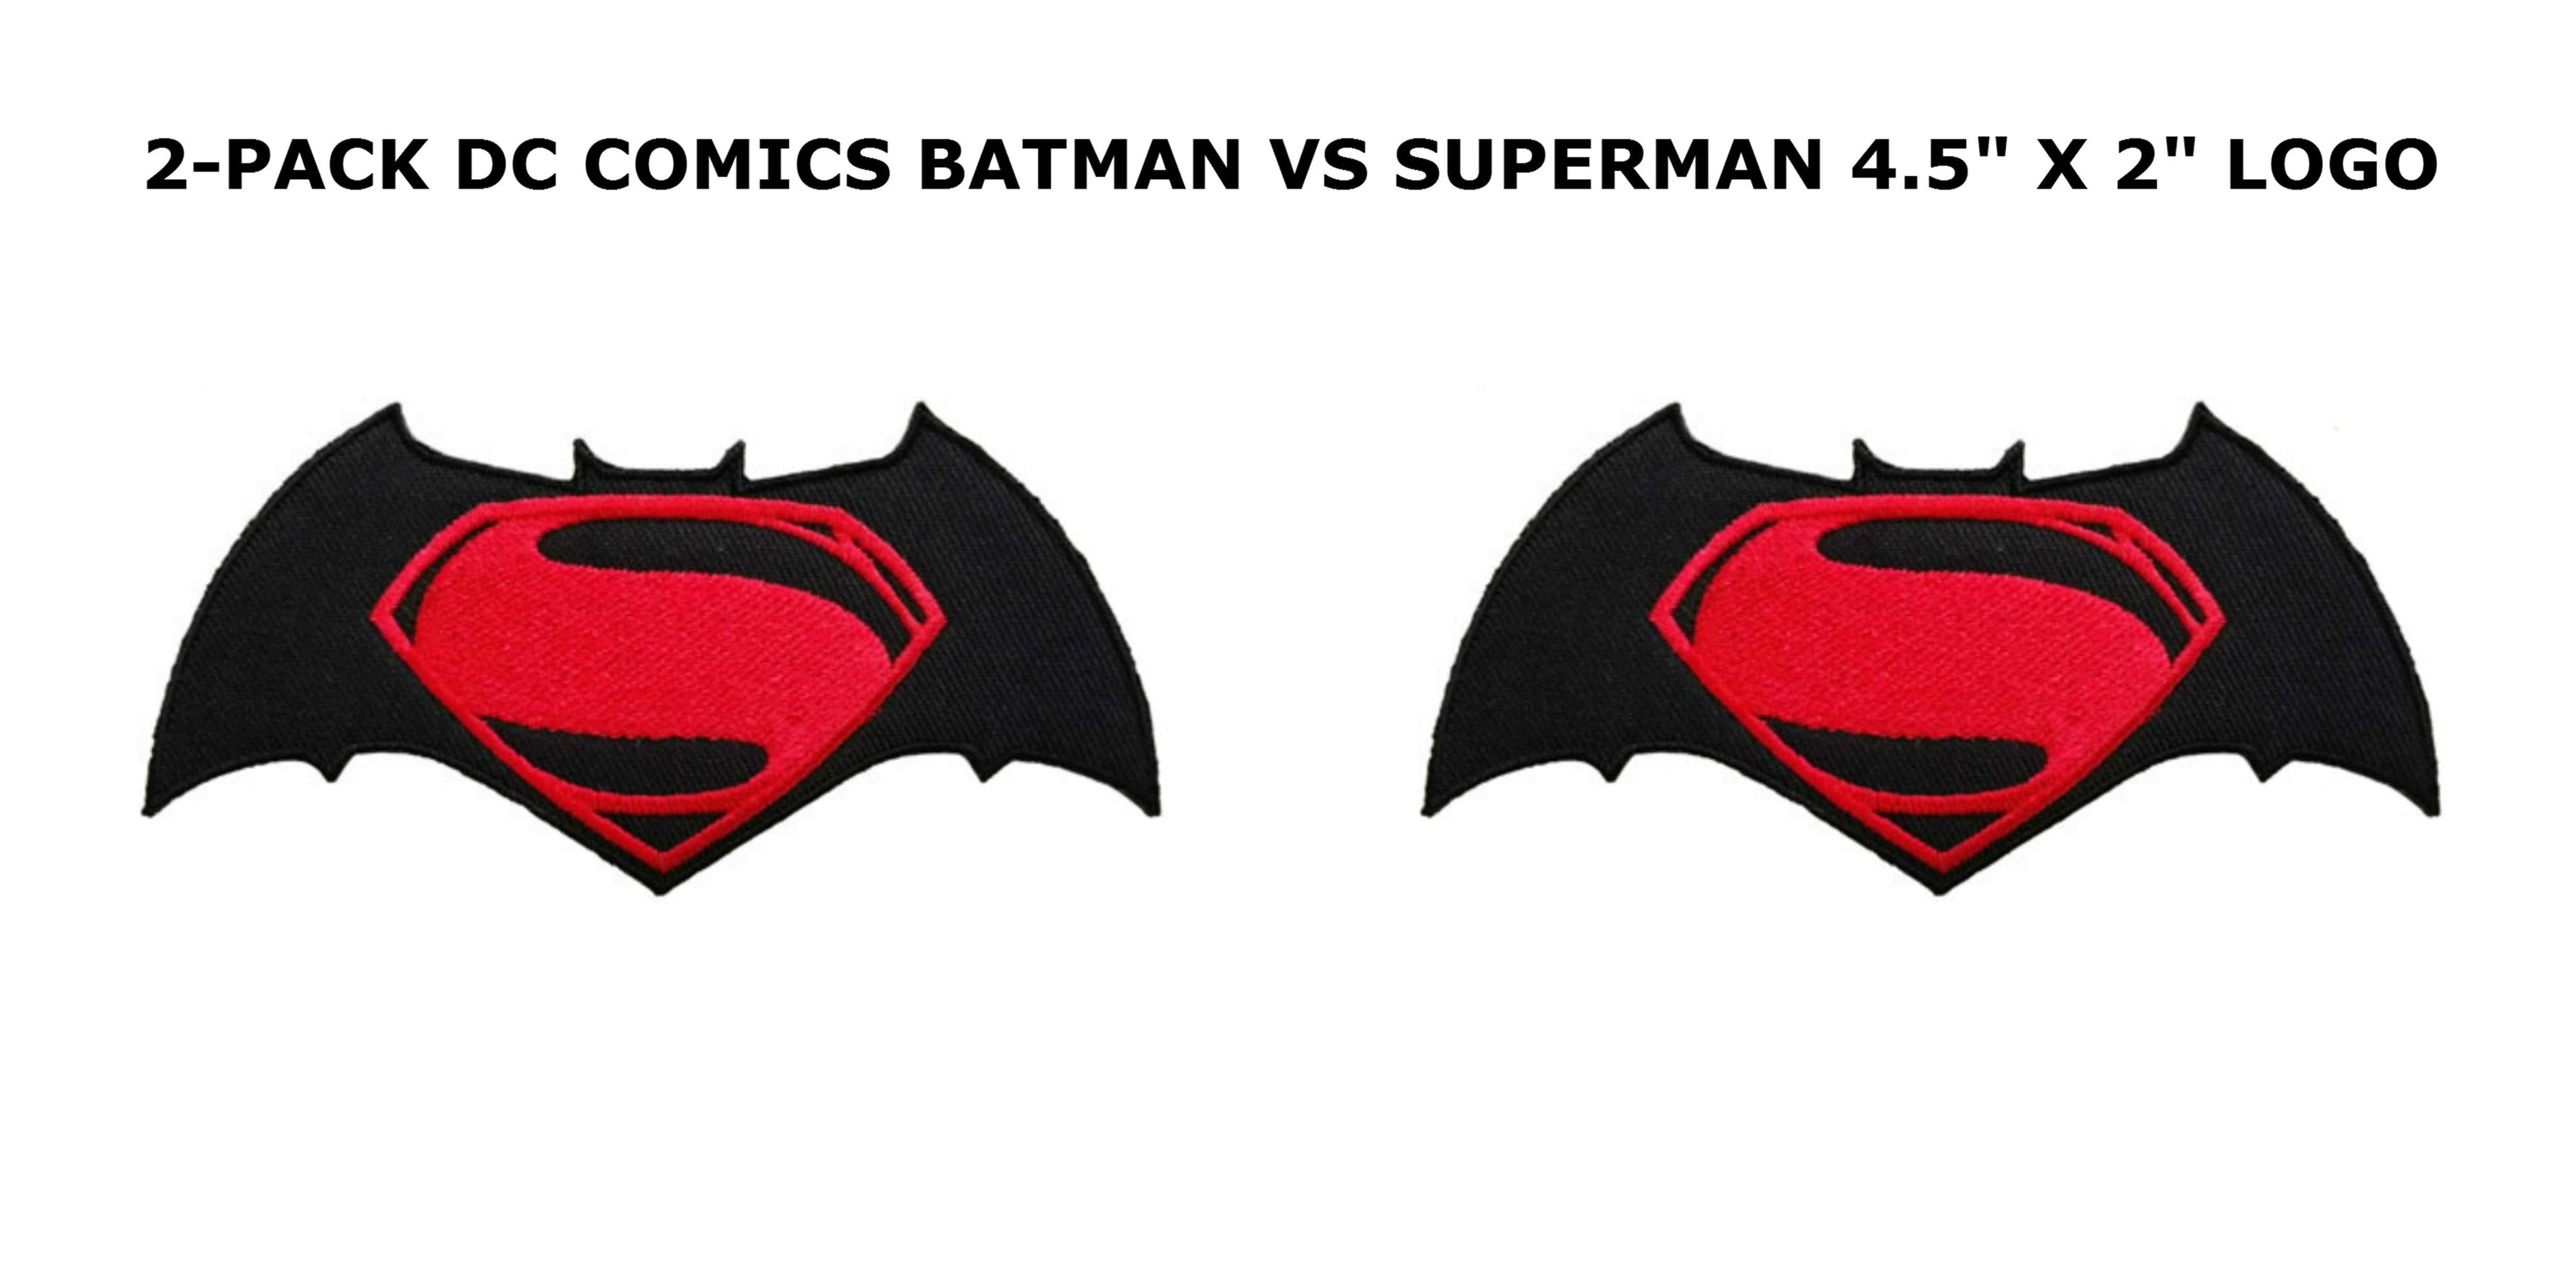 Superheroes DC Comics Batman Vs Superman 